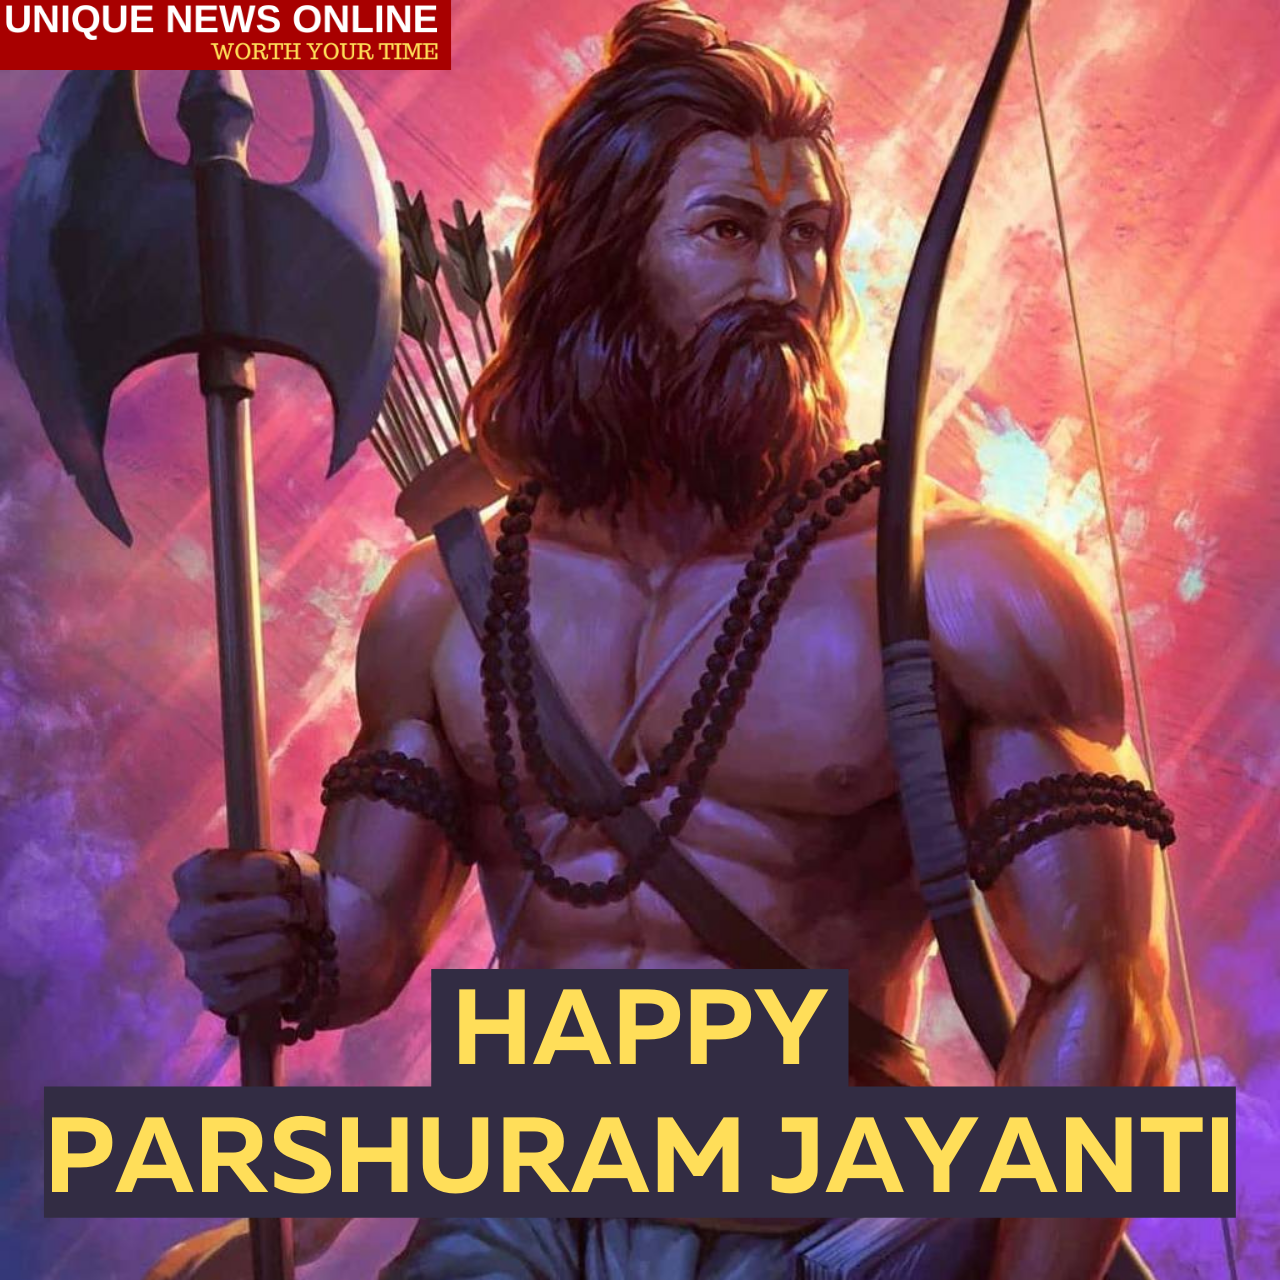 Happy Parshuram Jayanti 2021 WhatsApp Status Video Download for Free